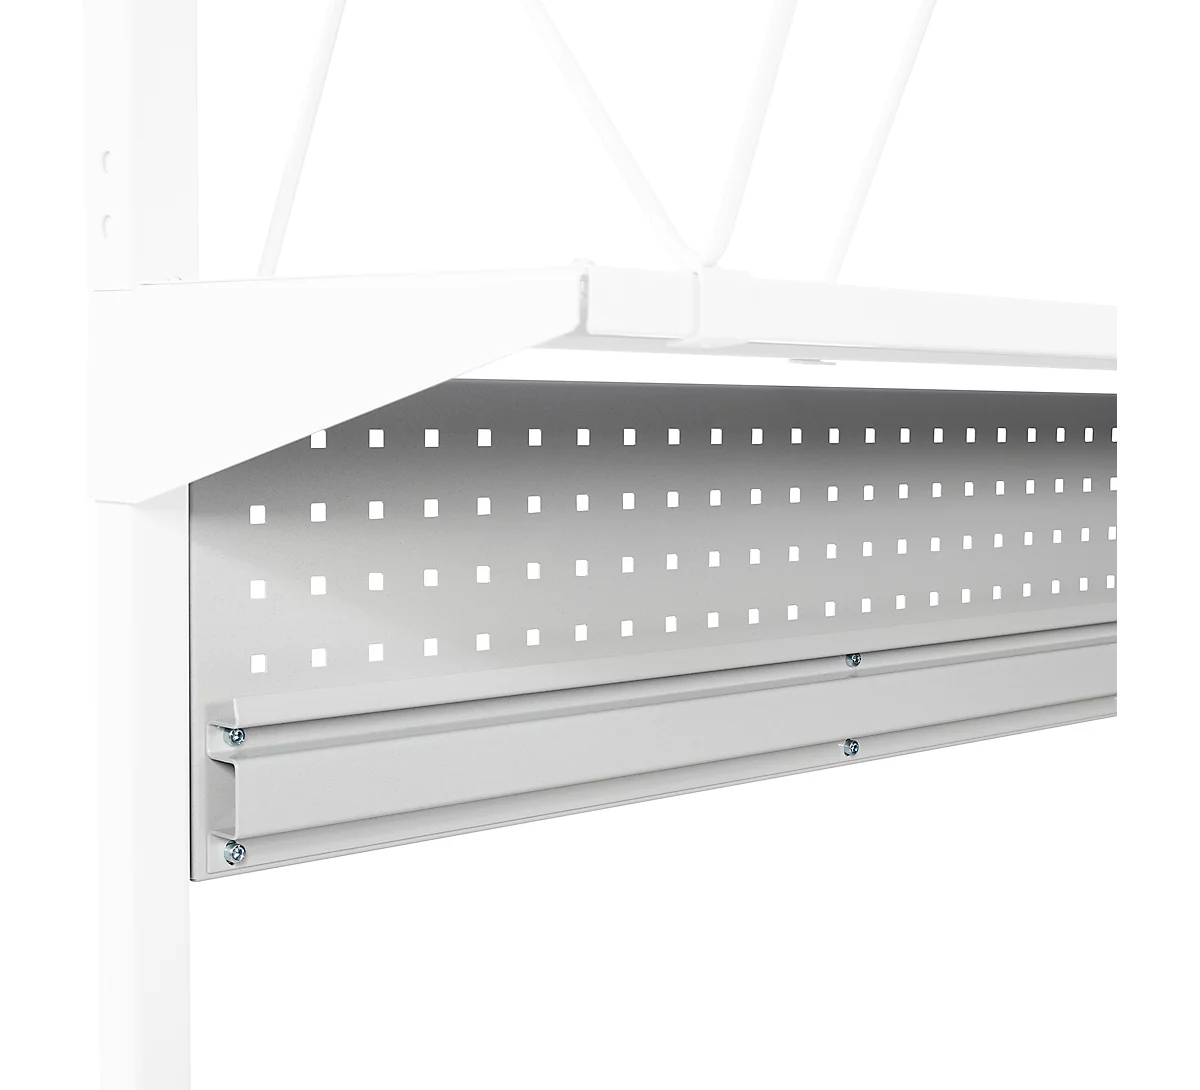 Placa perforada serie TPB, de acero, con perfil de caja, p. mesas de embalaje serie TPB, anchura de la mesa 1800 mm